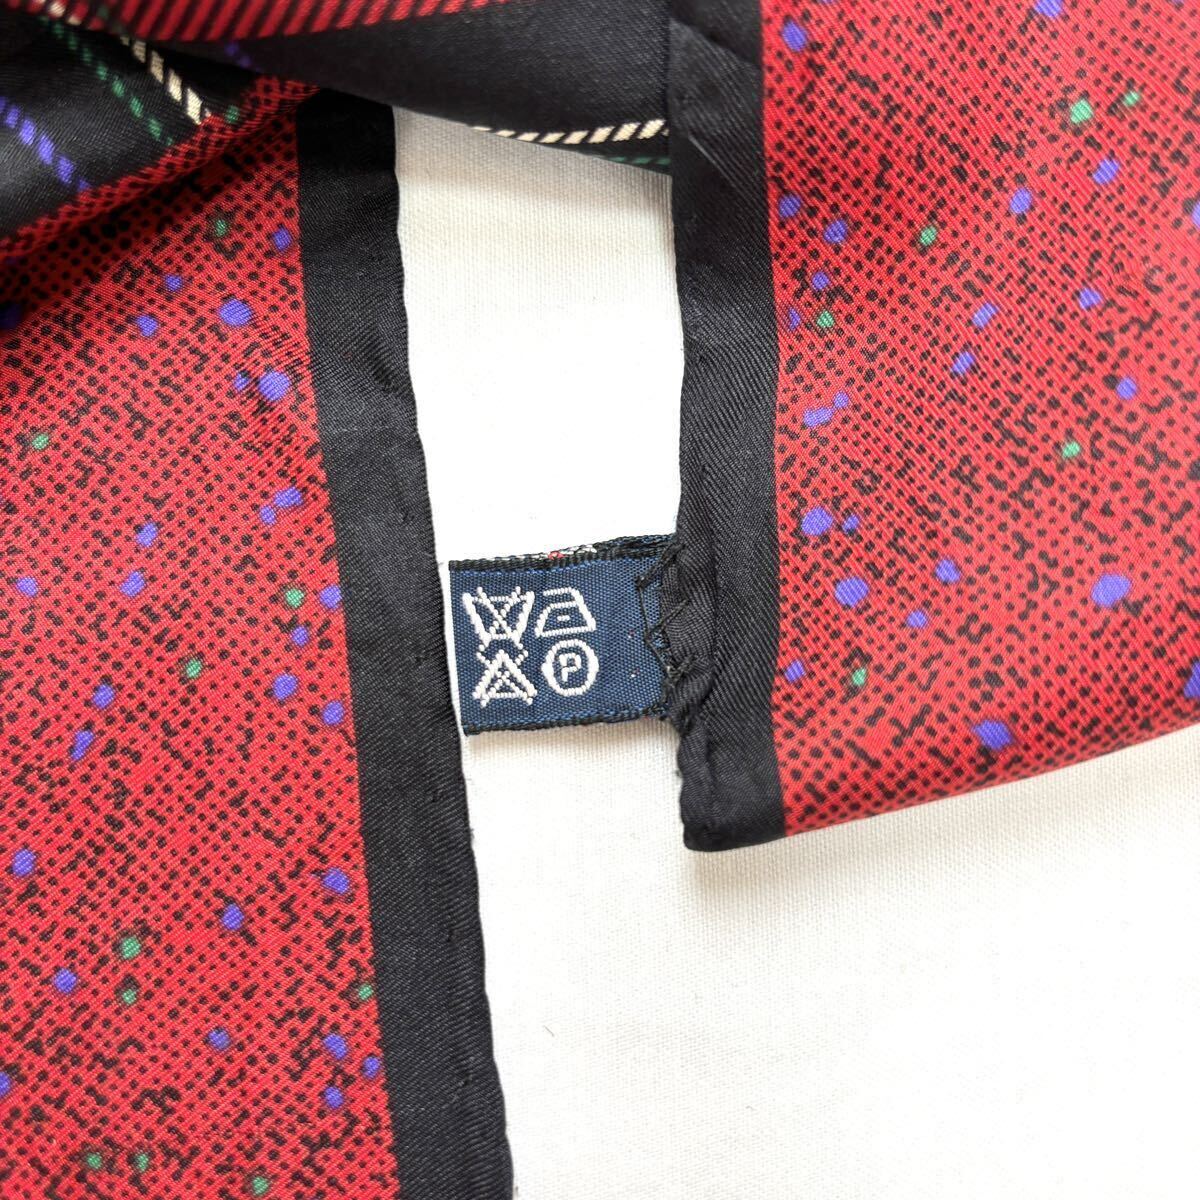 スカーフ 大判 シルク タータンチェック ブラックスチュアート チェック柄 綺麗色 赤系 紺 ネイビー系 60309AM